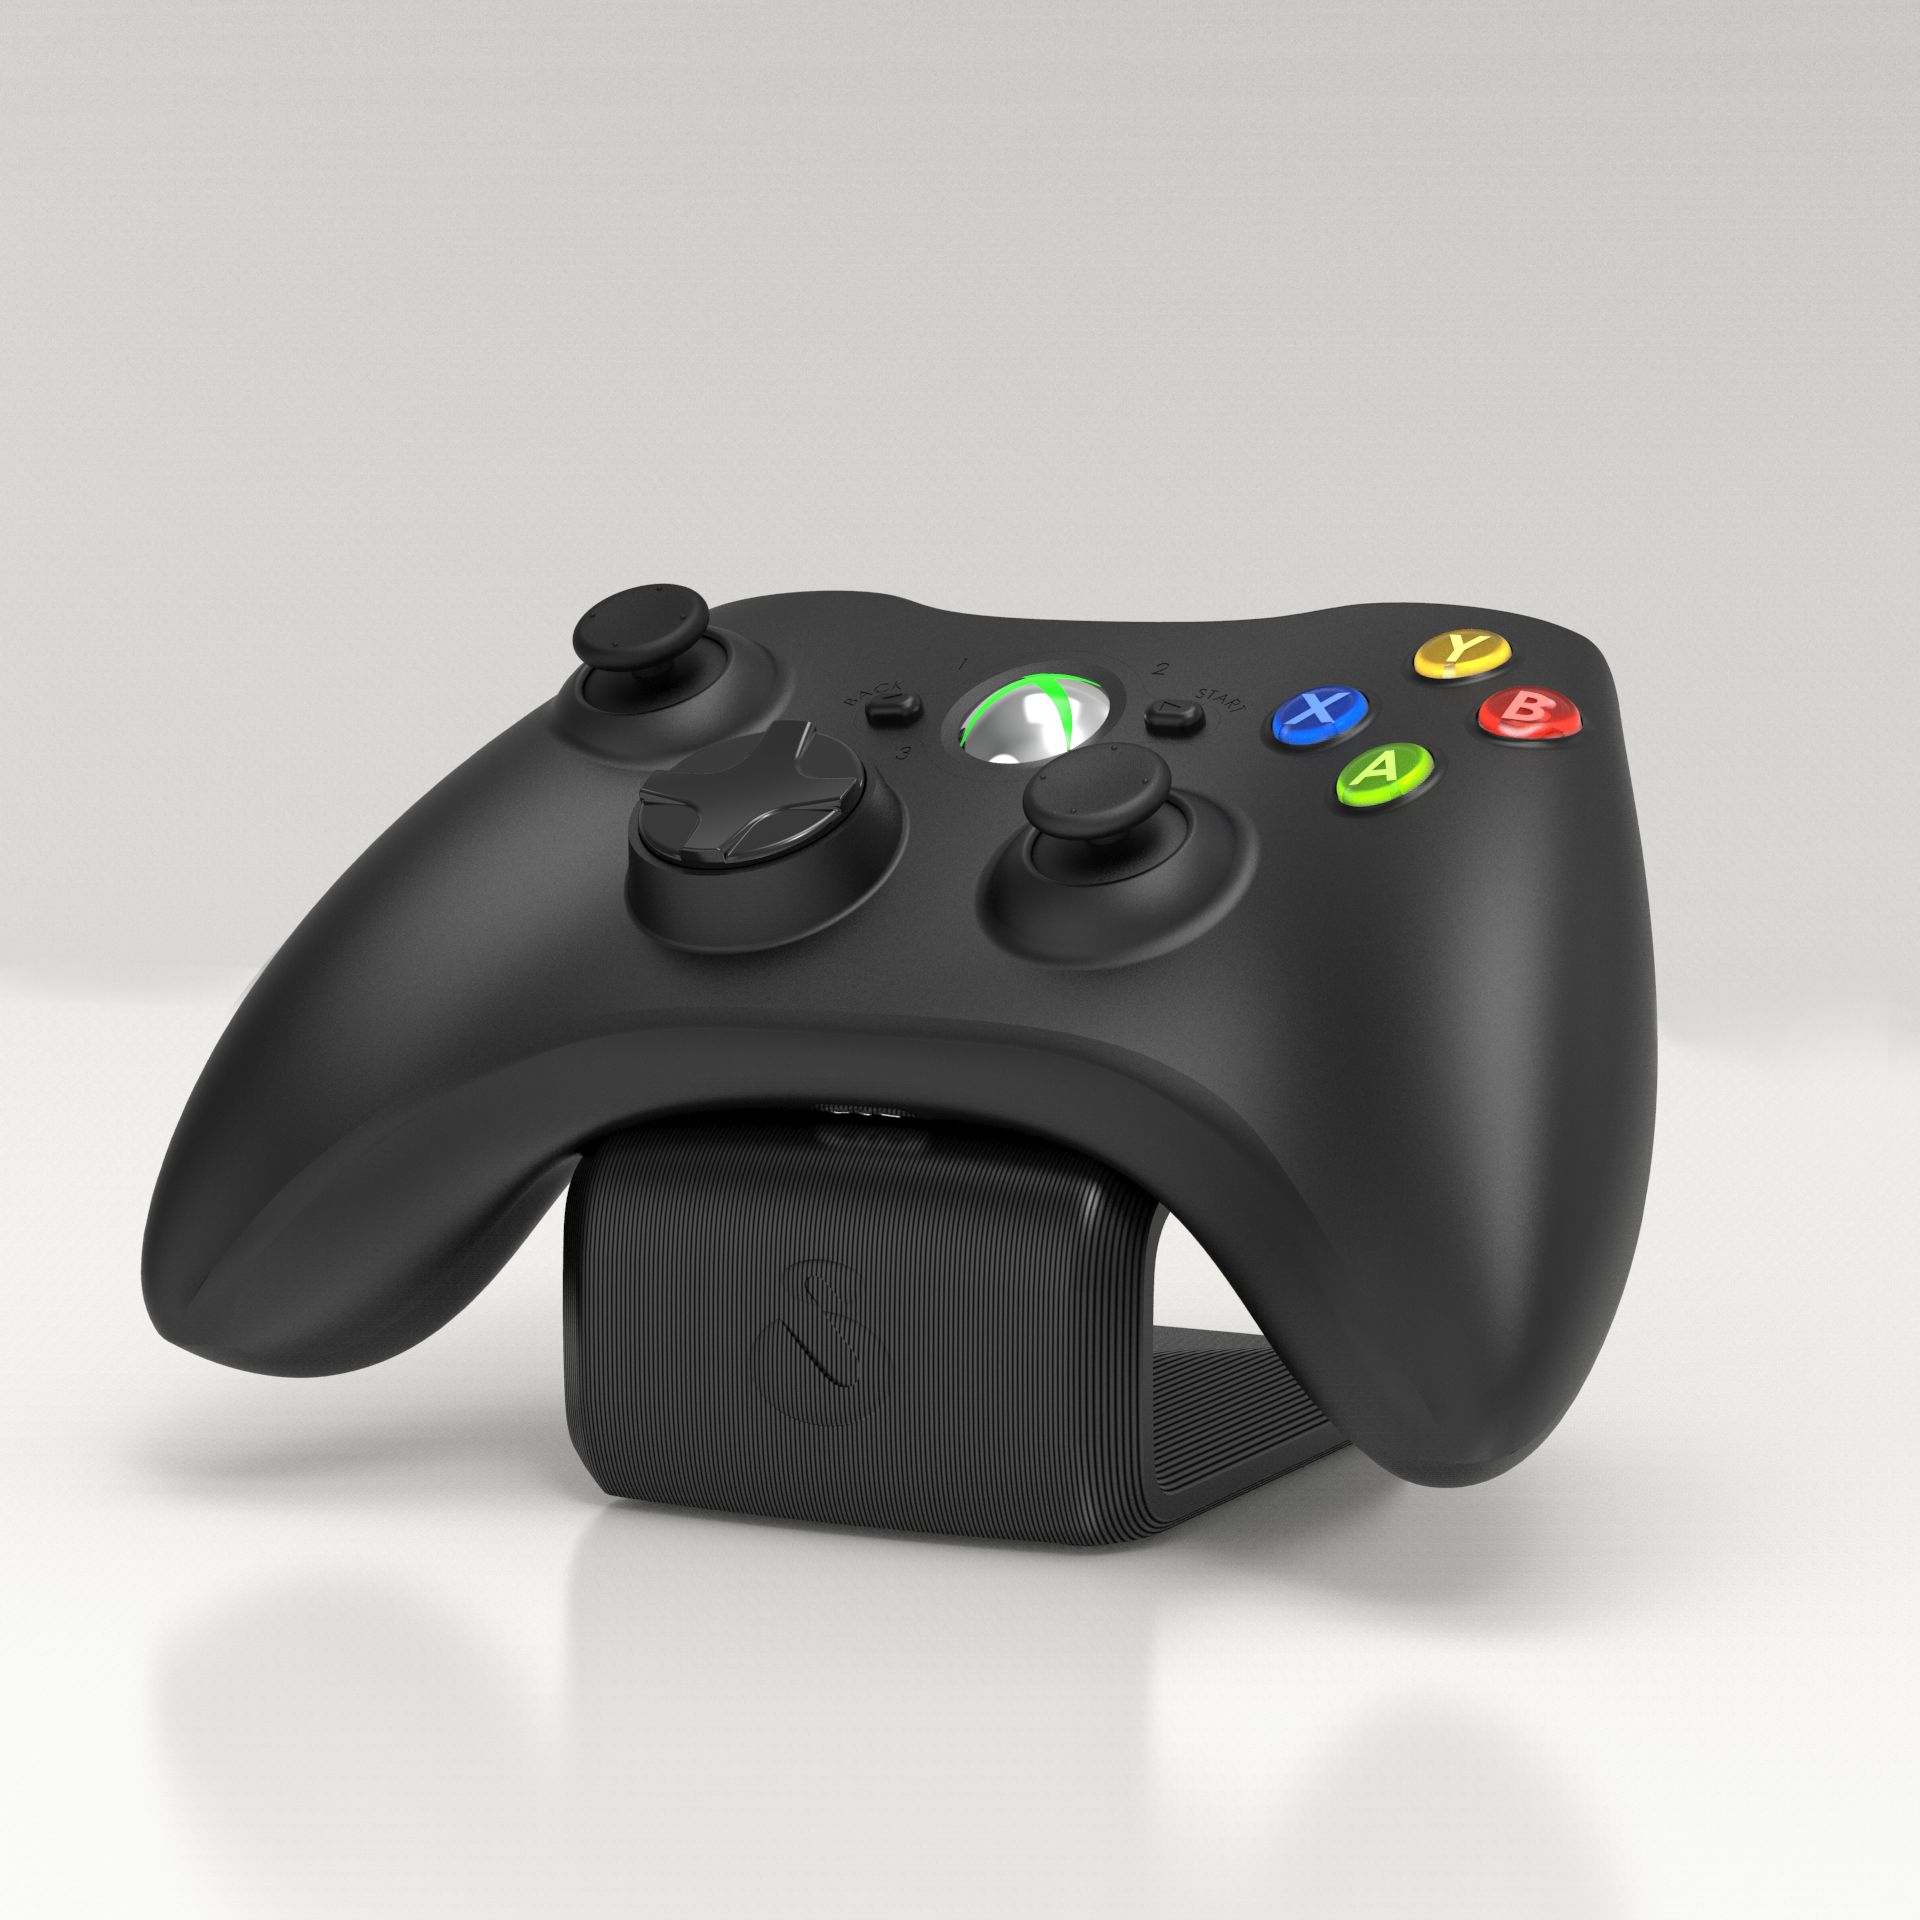 Inventor cria suporte para comida no controle do Xbox 360